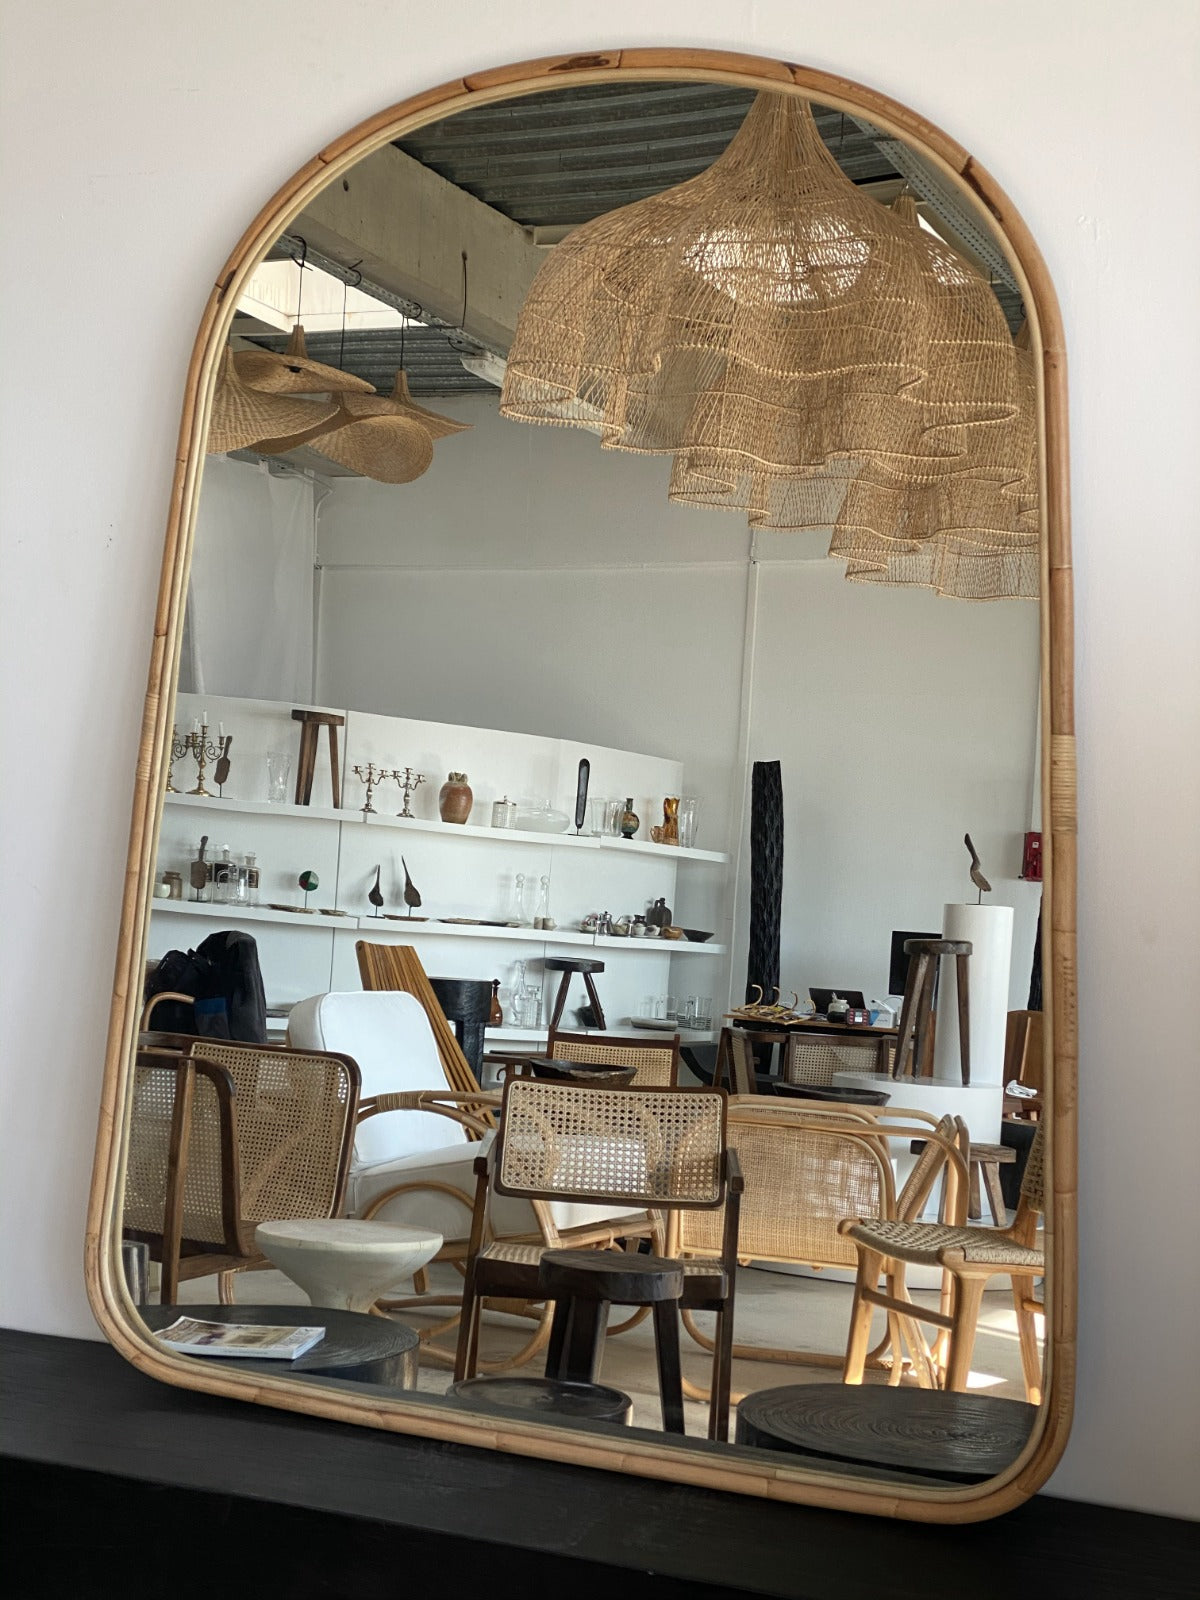 Miroir peinture dorée H:1m68 L:97cm – OfficeObjets